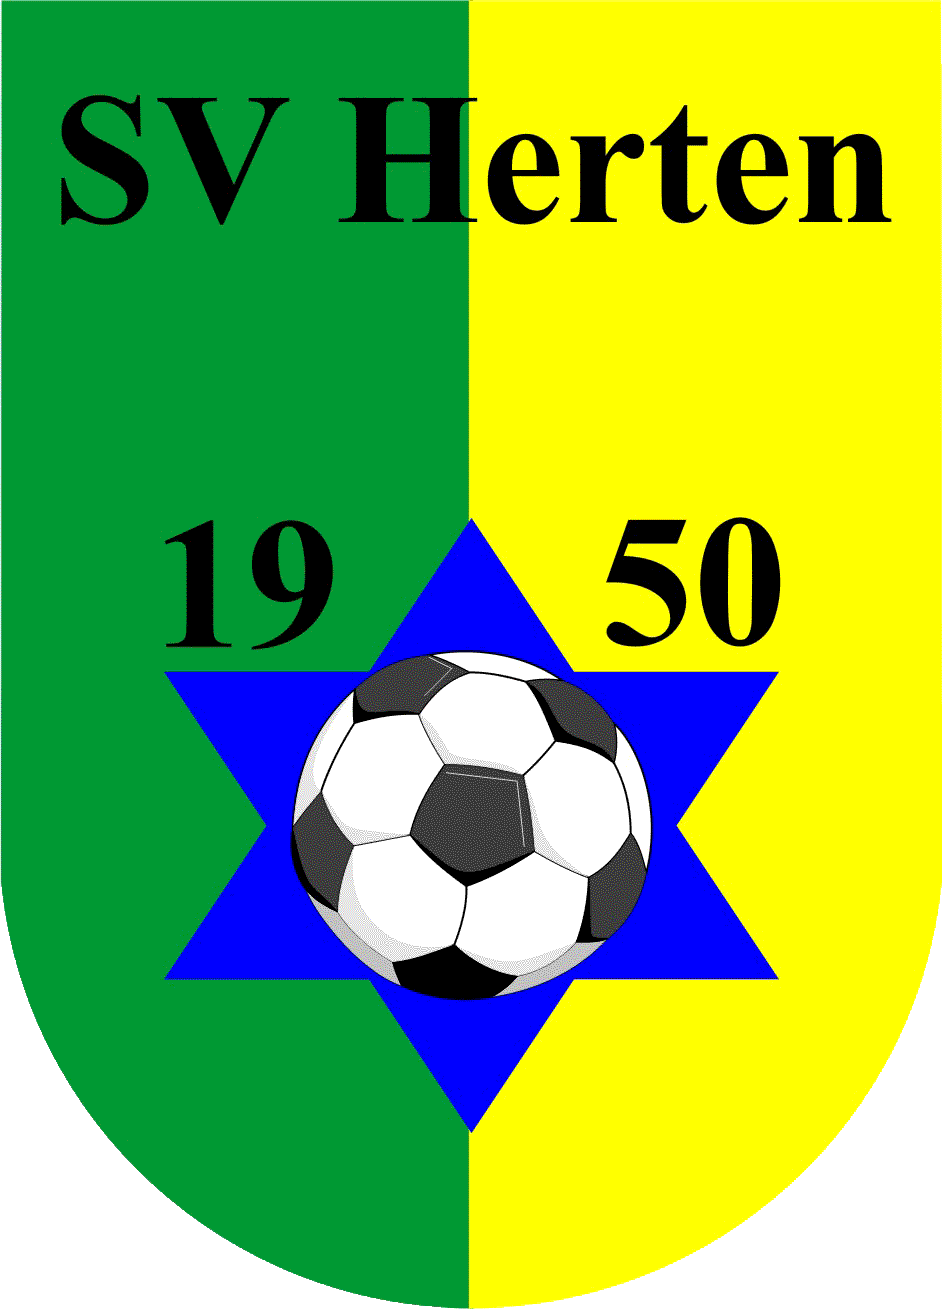 SV Herten 1950 e.V.